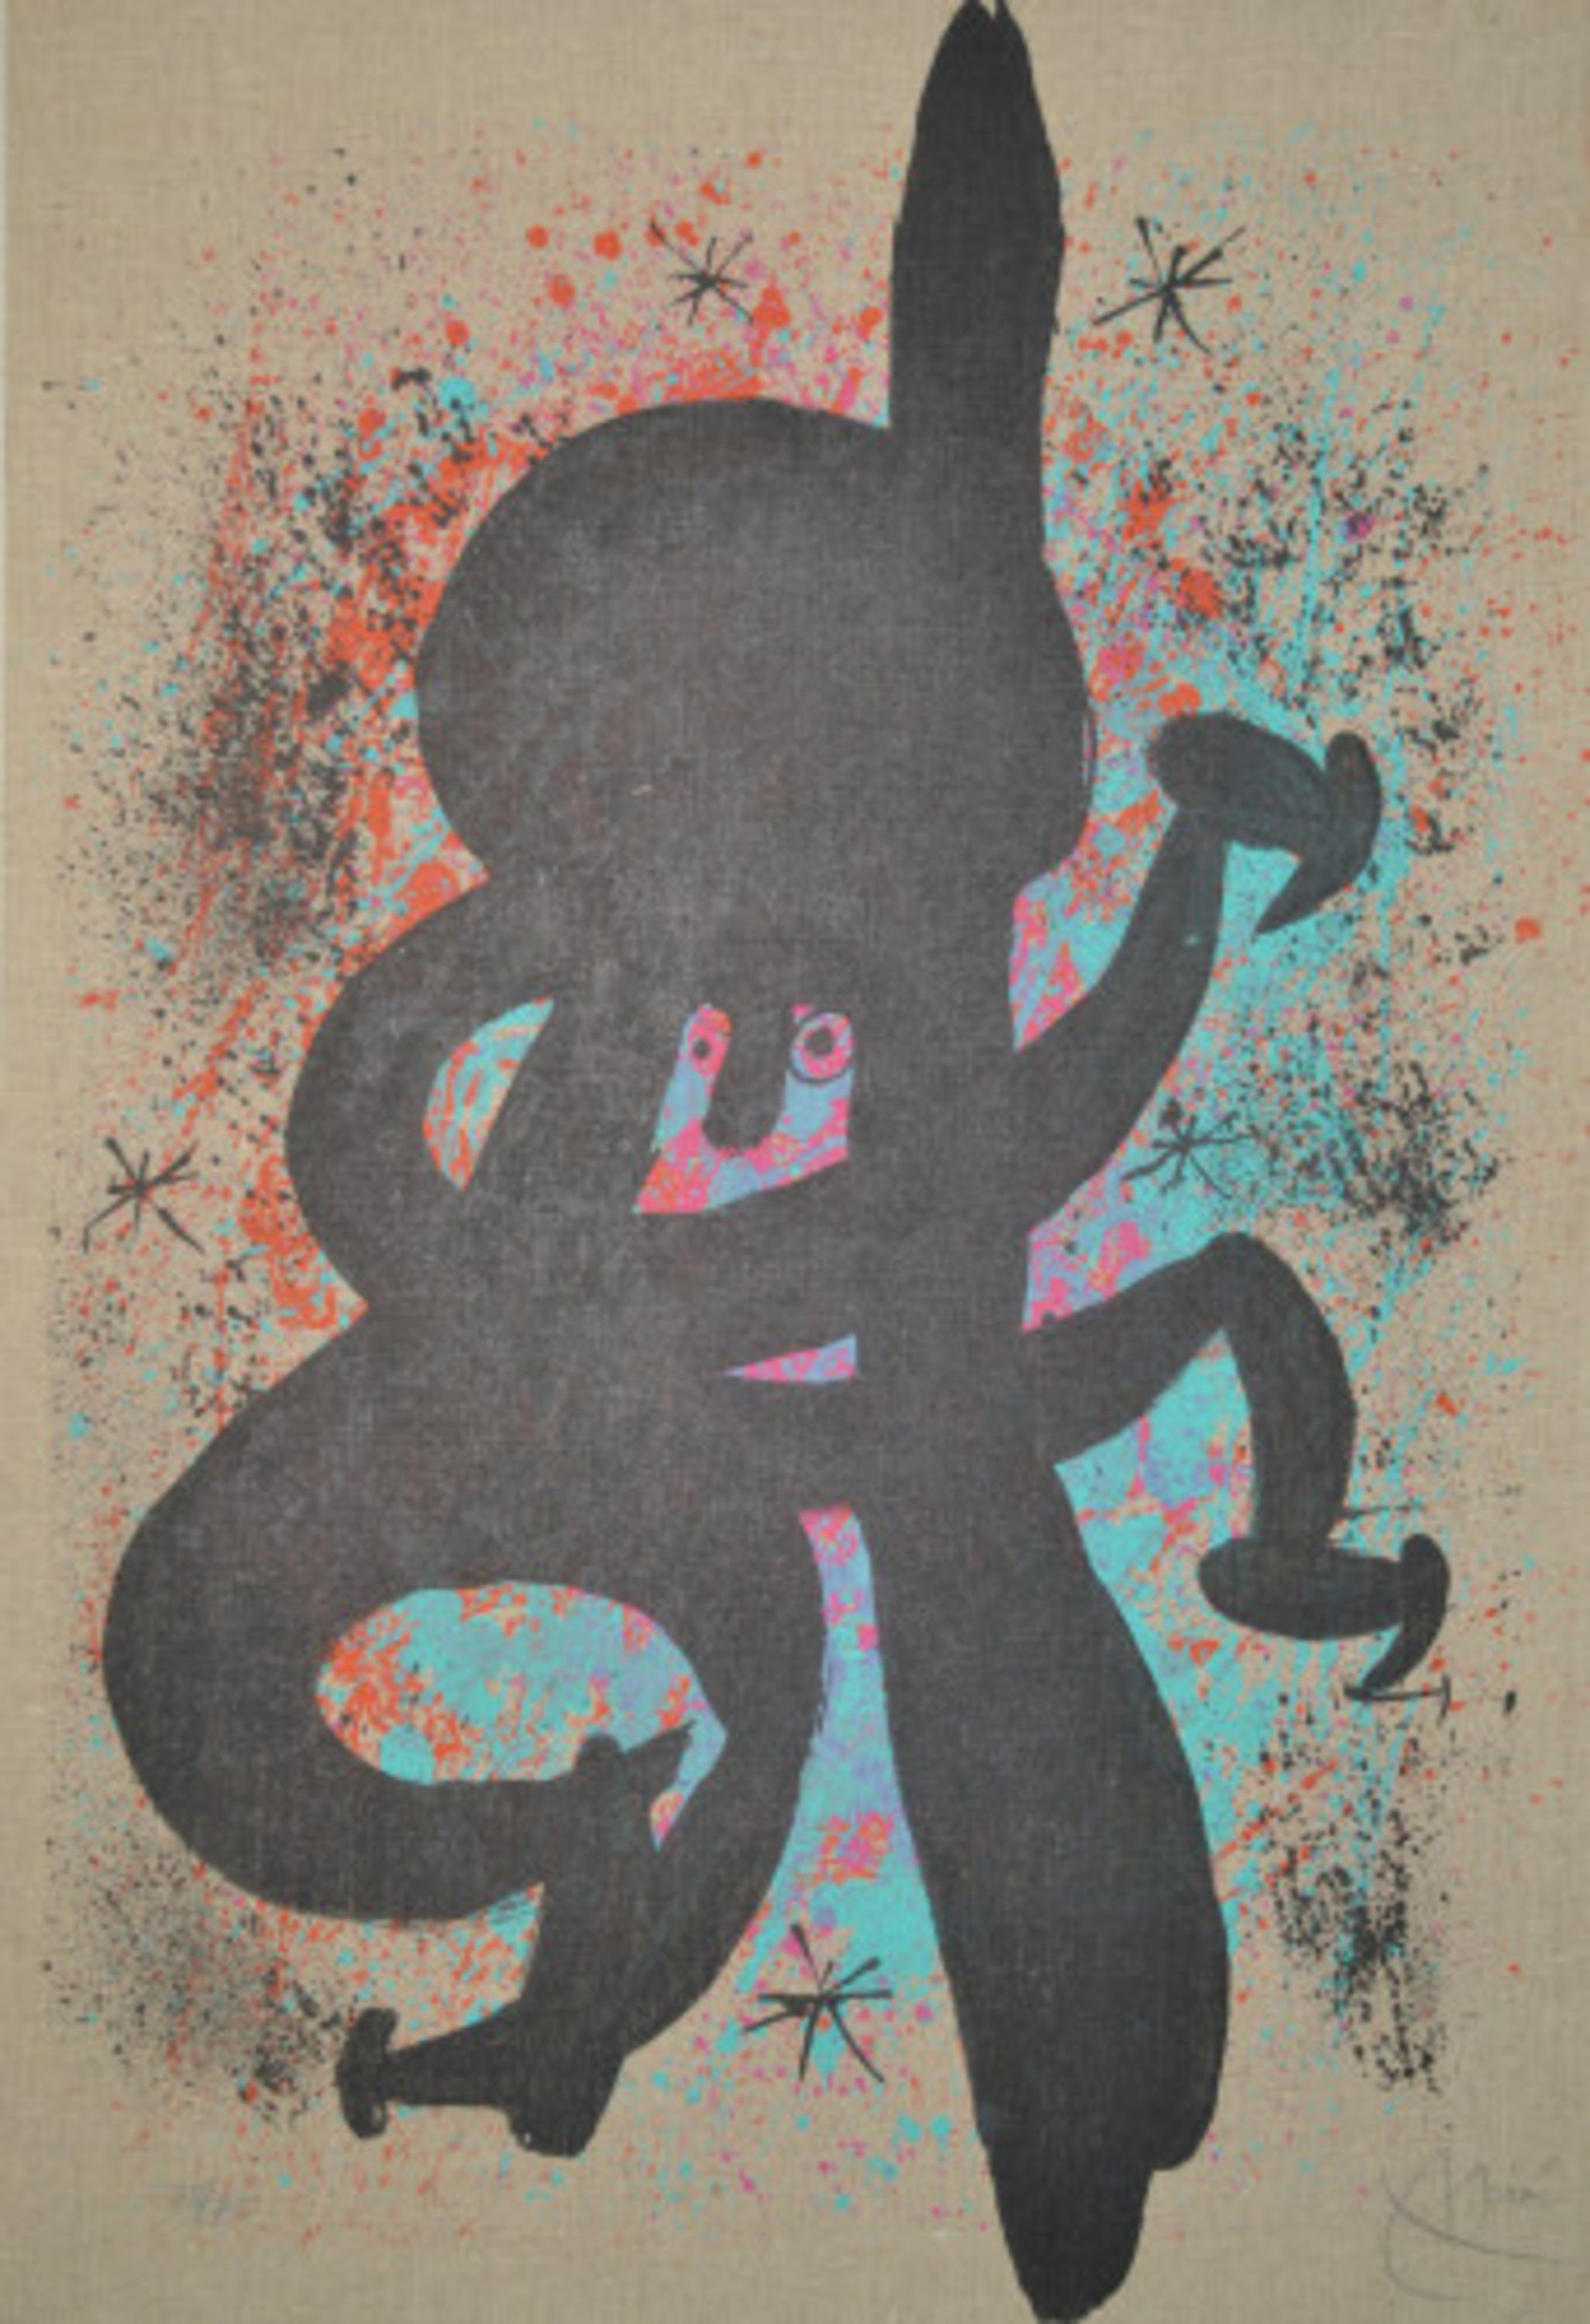 The Feverish Eskimo - M637 - Print by Joan Miró